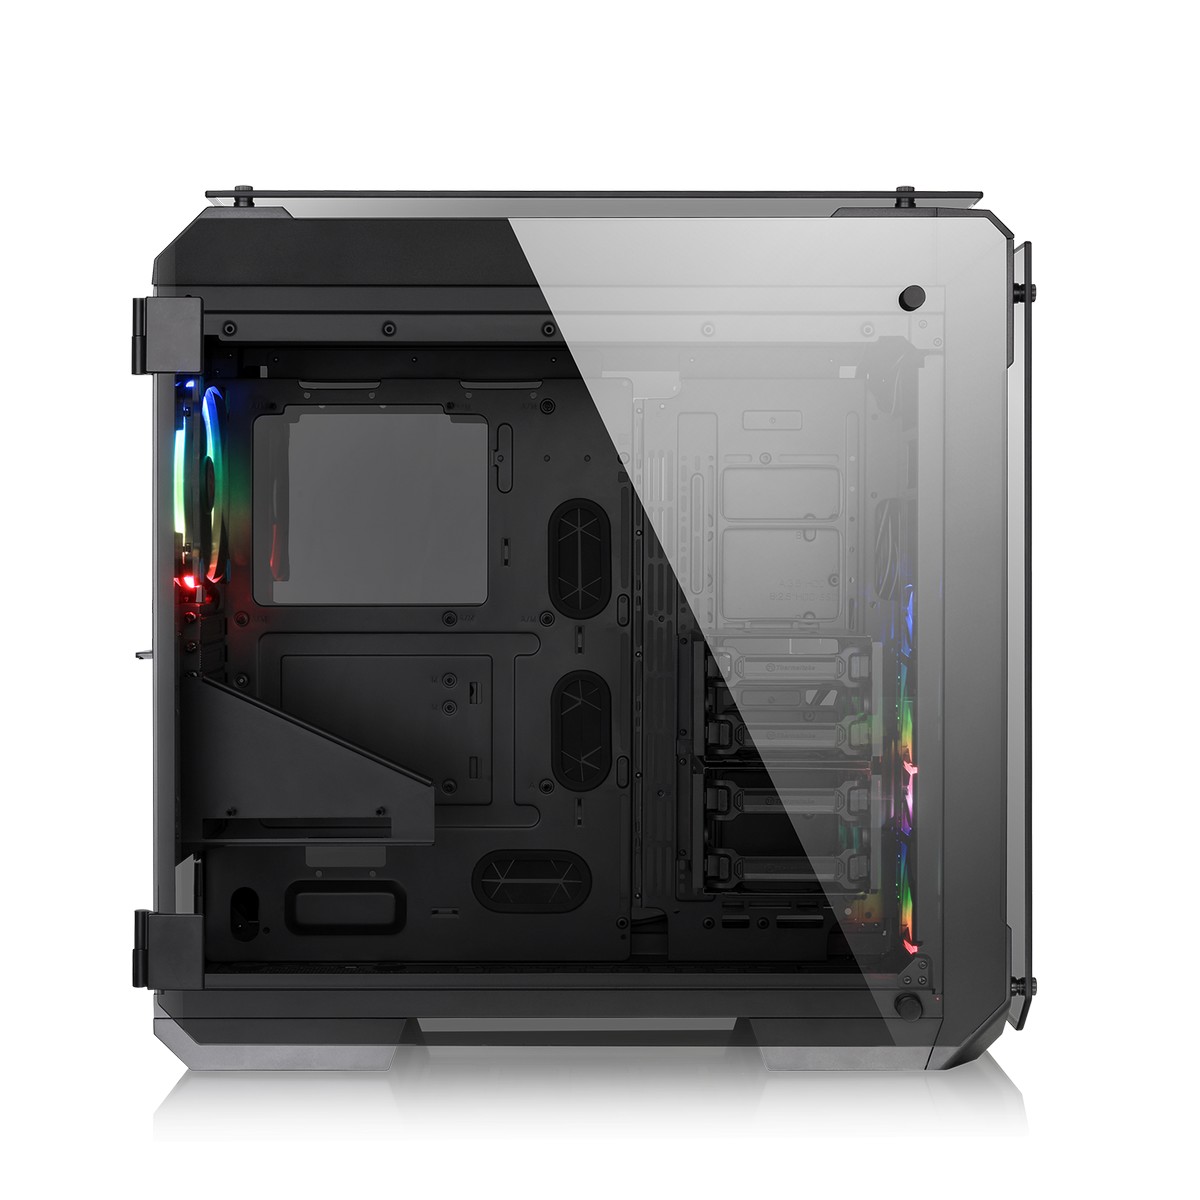 Thermaltake - Thermaltake View 71 RGB Full Tower Gaming Case - Black Tempered Glass